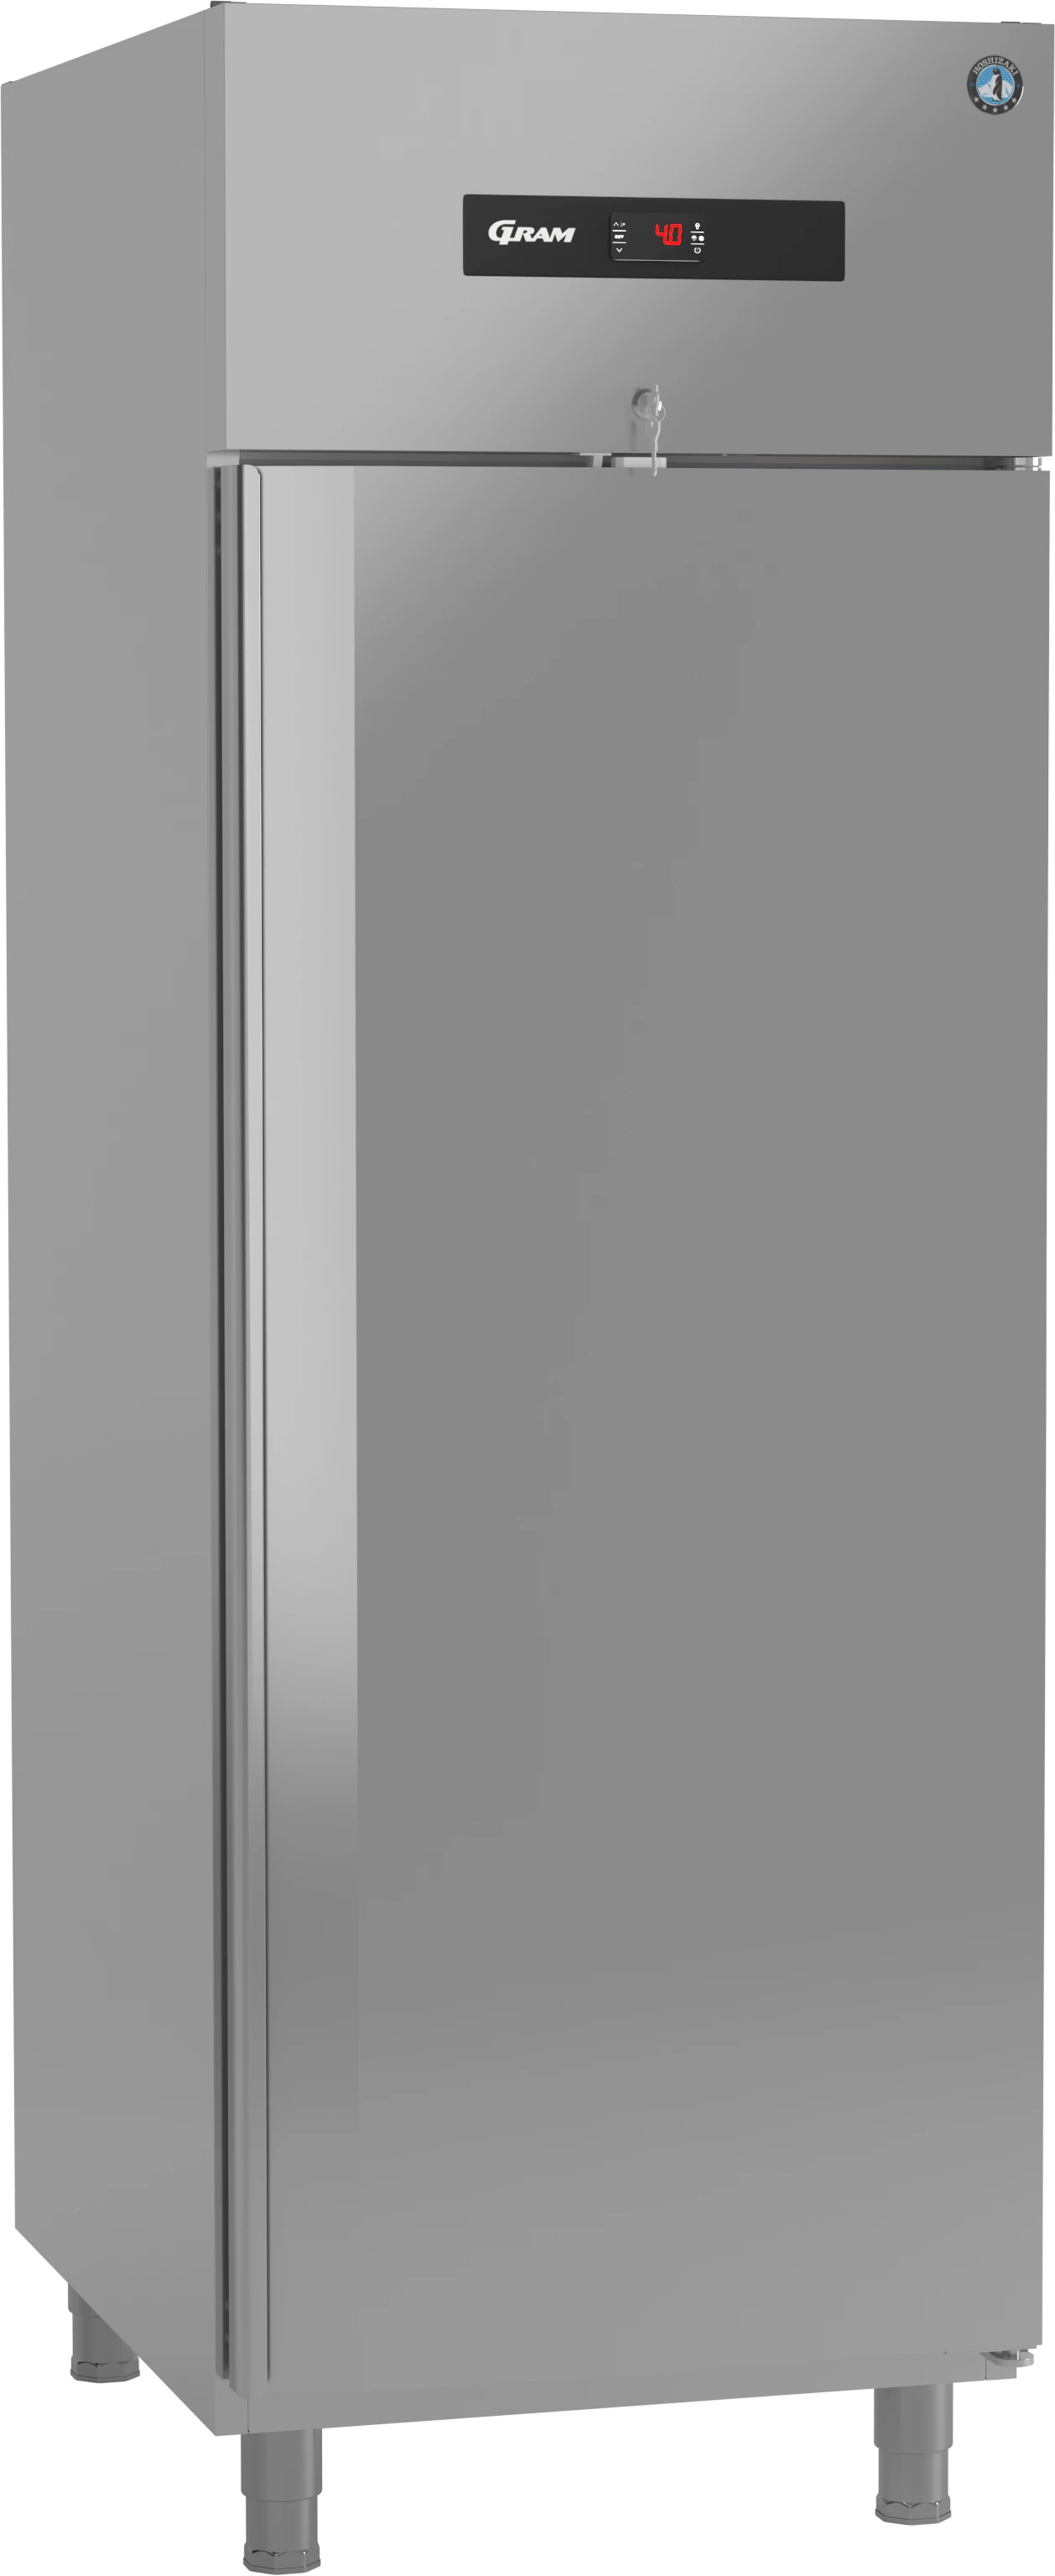 Gram Advance K70 køleskab